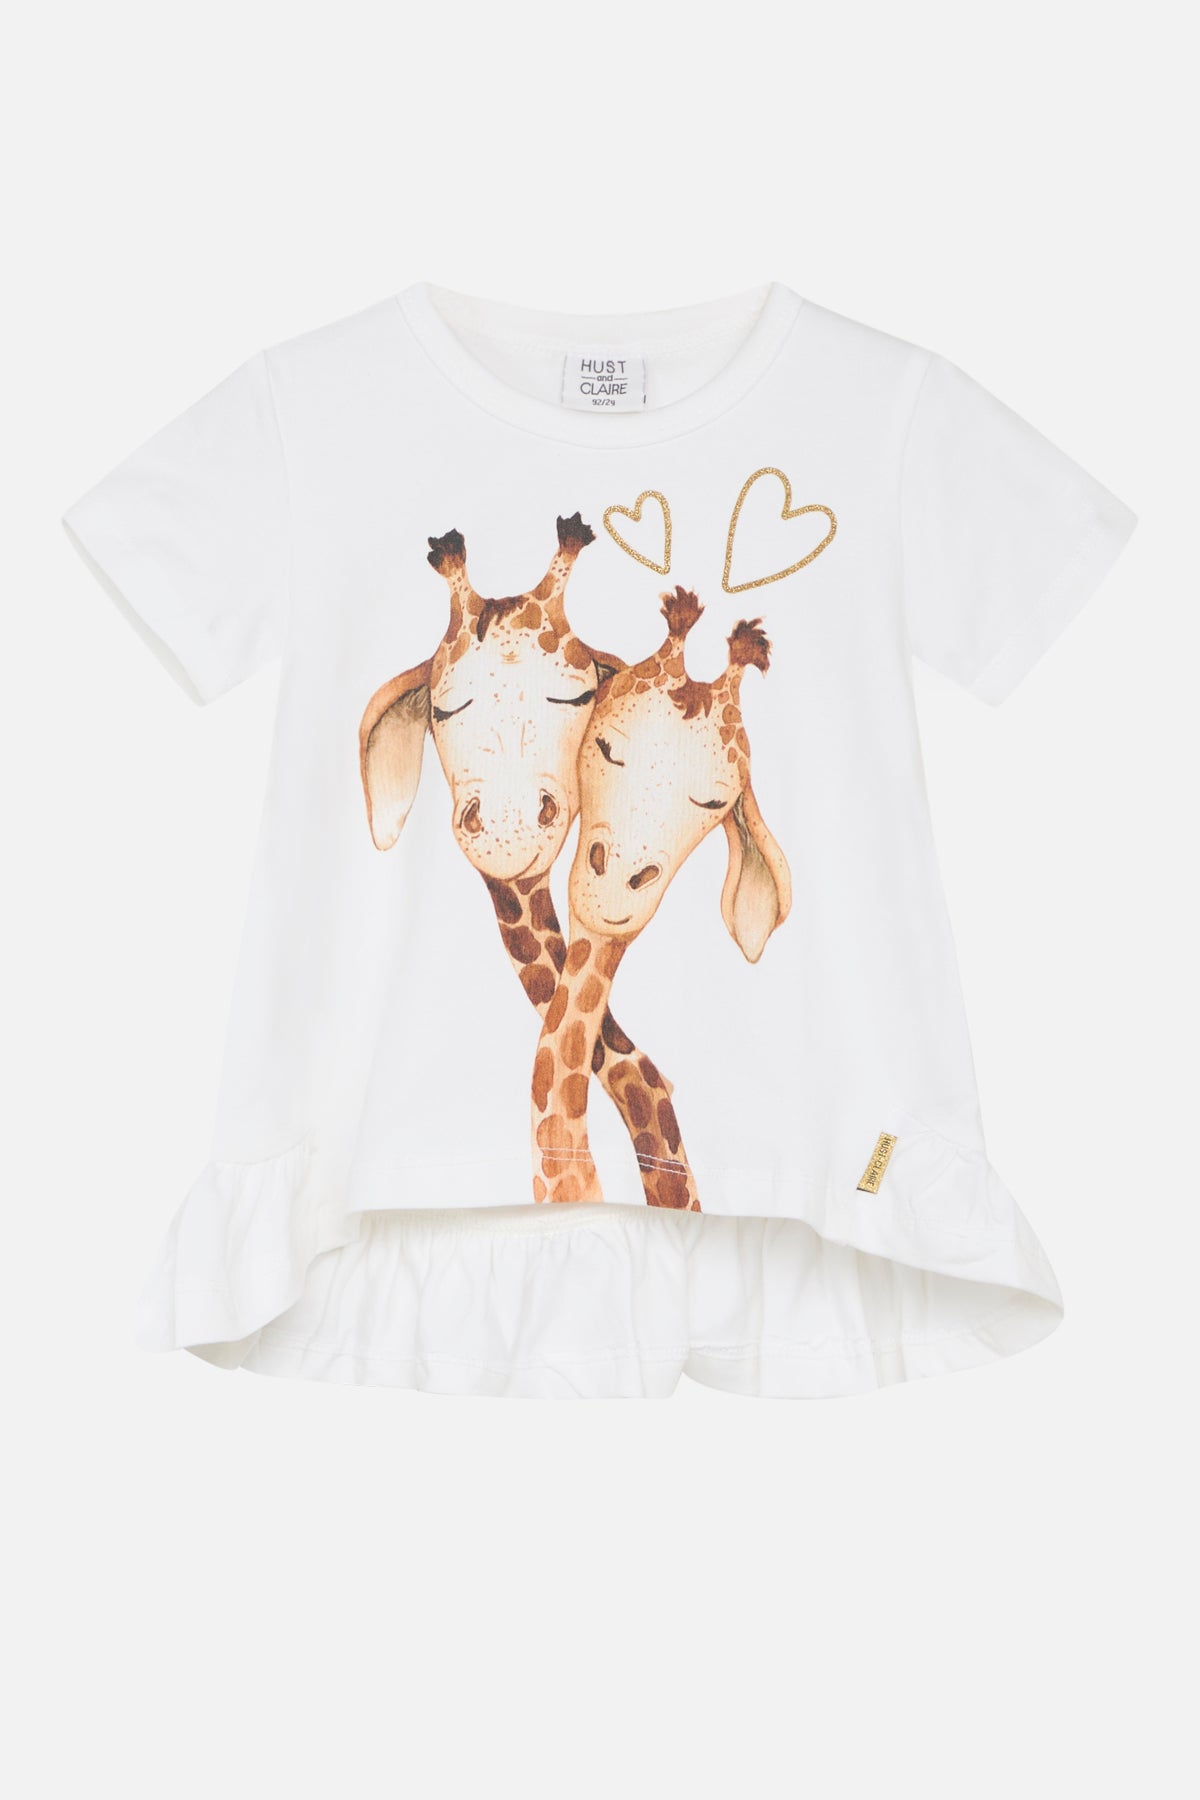 Kurzarm-Shirt Adanna, Giraffen-Print - Hust&Claire